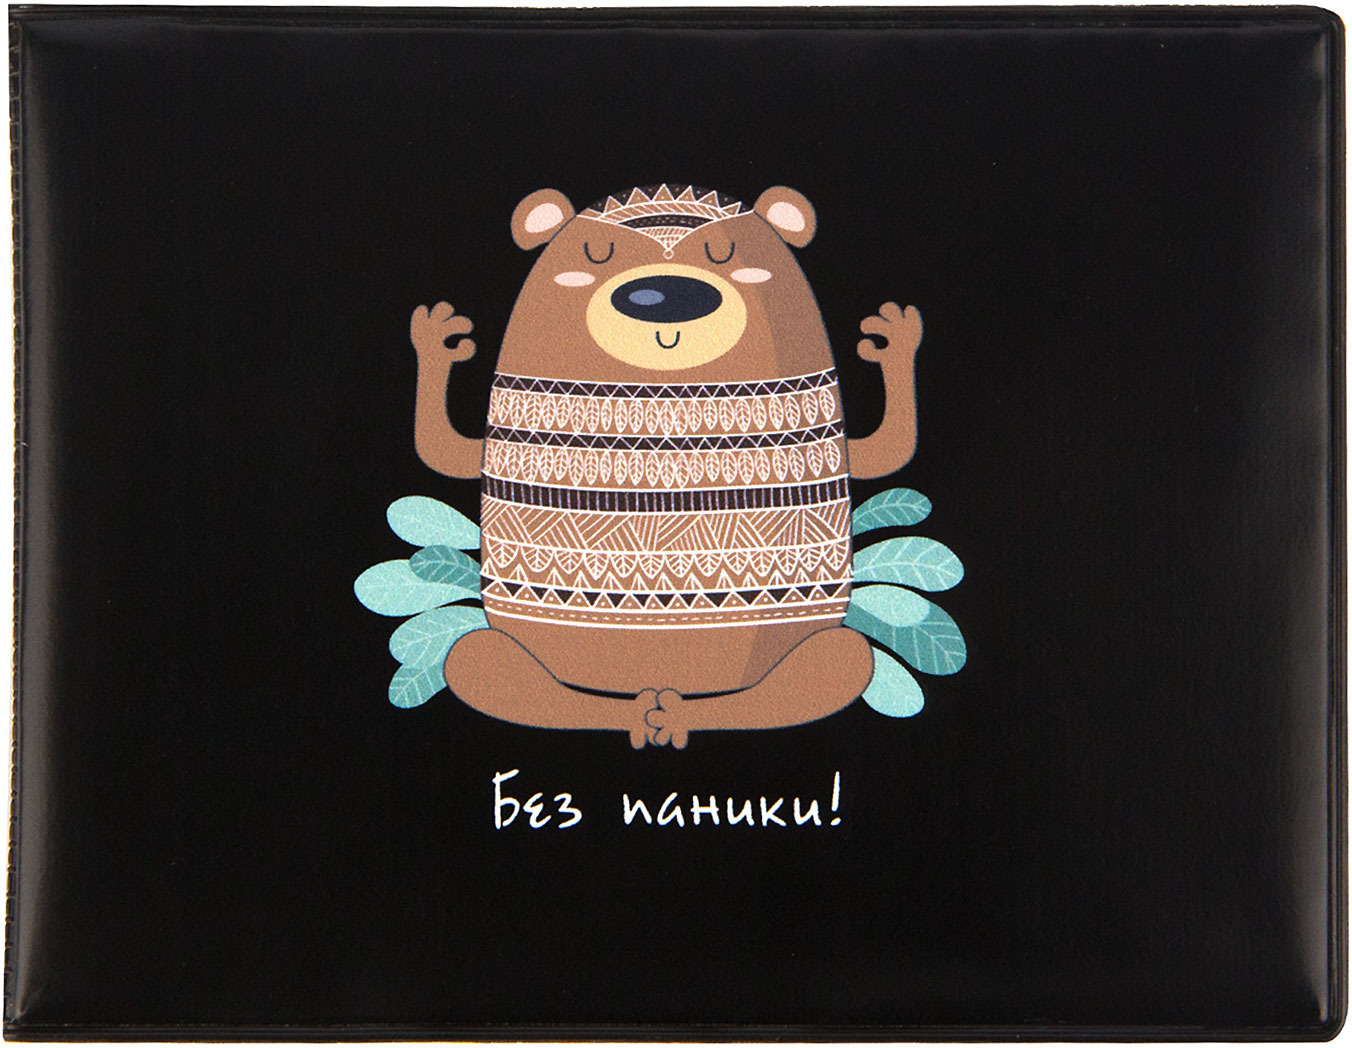 фото Обложка на студенческий билет Kawaii Factory "Медведь без паники", цвет: черный, коричневый. KW067-000138